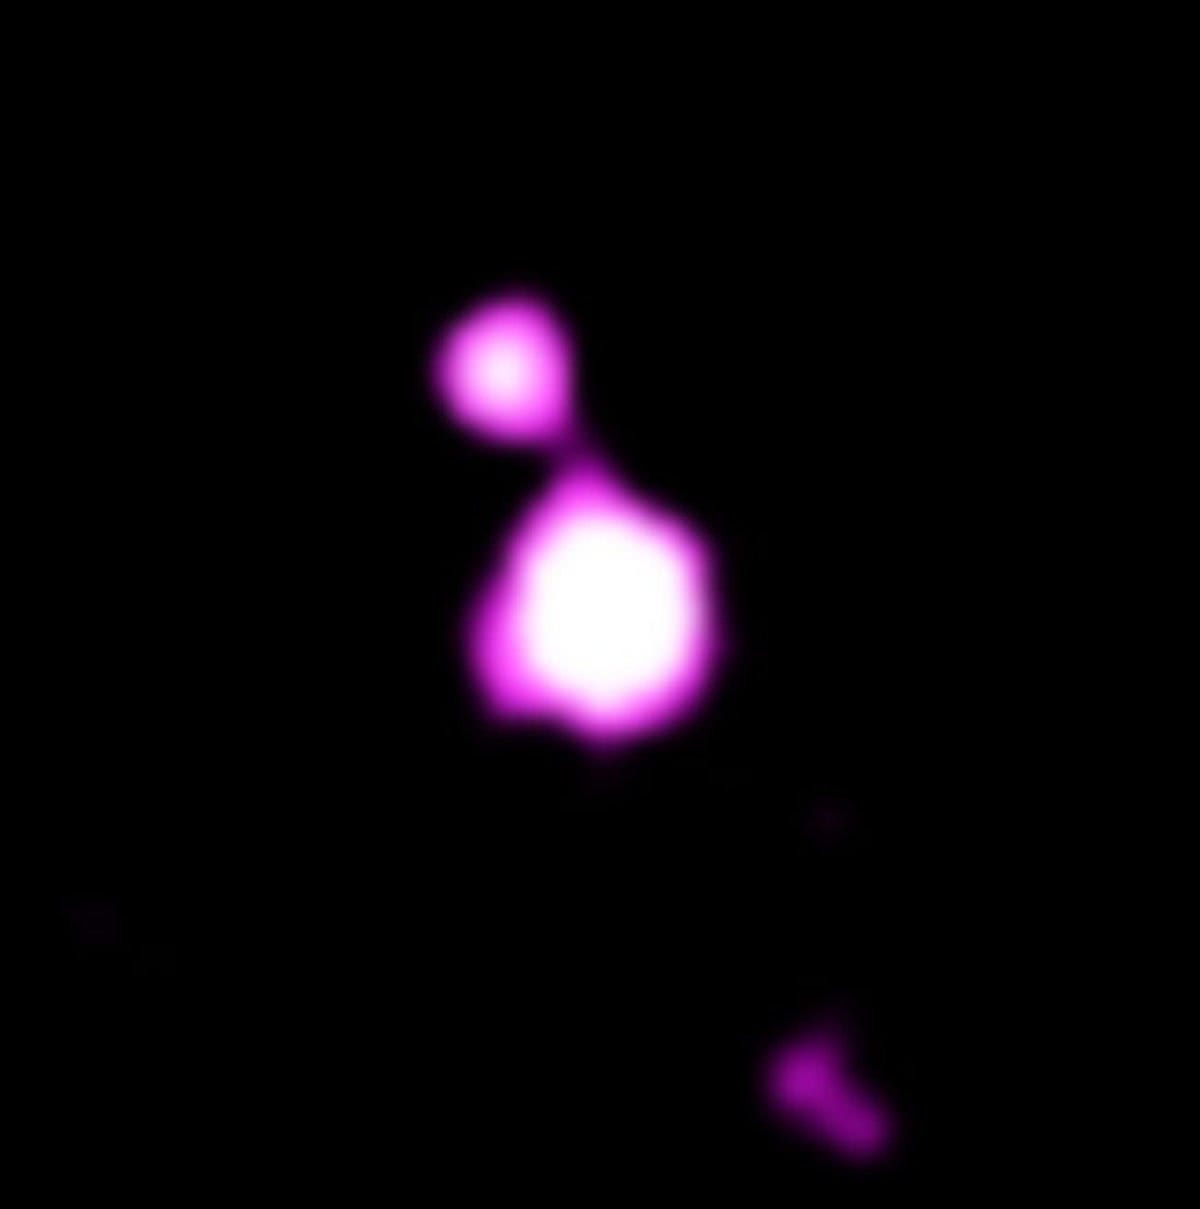 Imagem dos jatos sendo emitidos pelo buraco negro a 80% da velocidade da luz